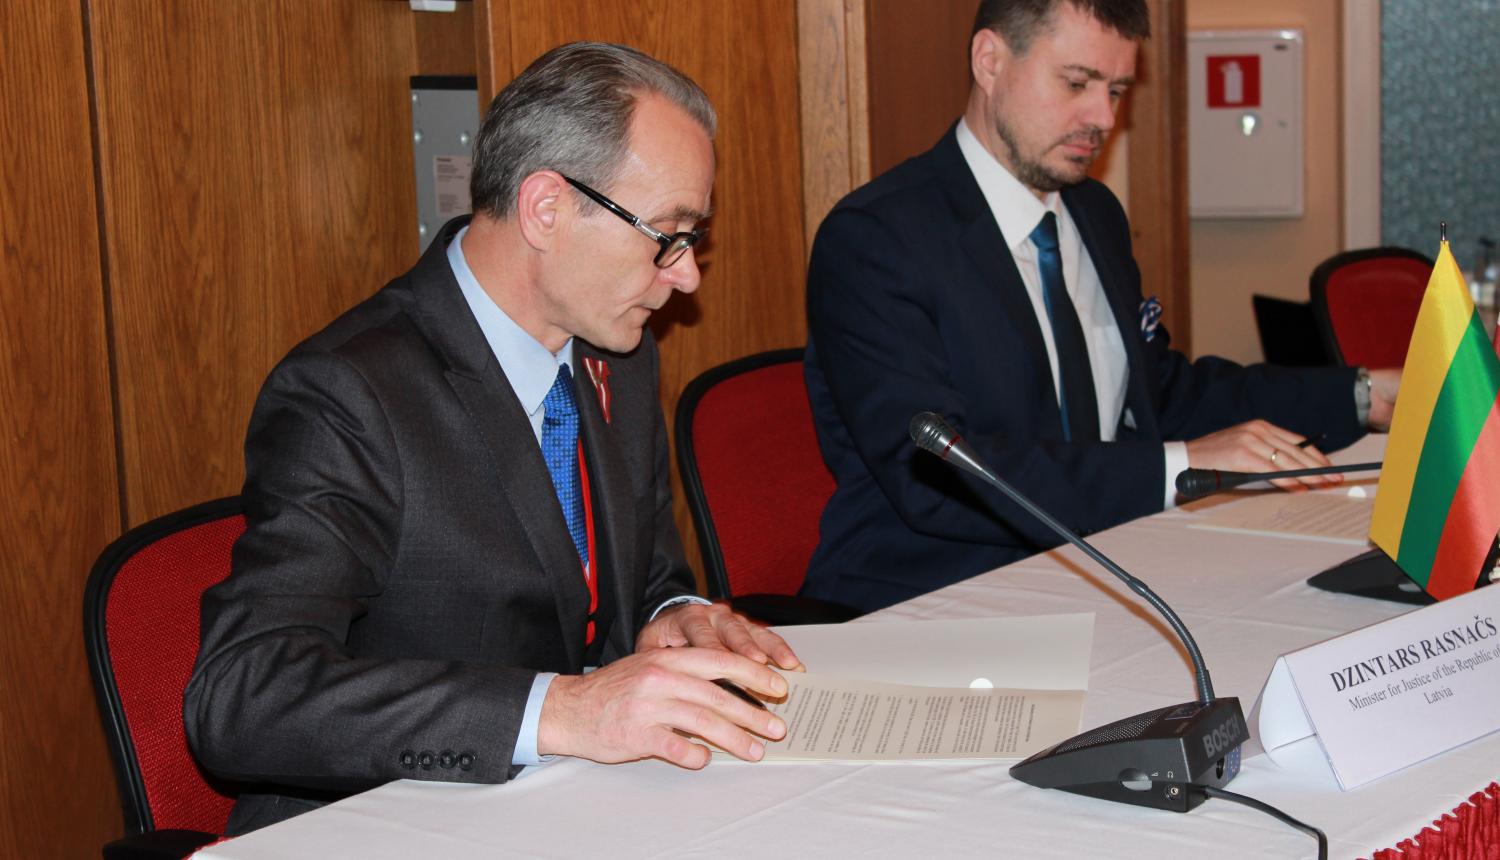 Baltijas valstu tieslietu ministri parakstījuši deklarāciju par PSRS okupācijas nodarīto zaudējumu aprēķināšanas nepieciešamību